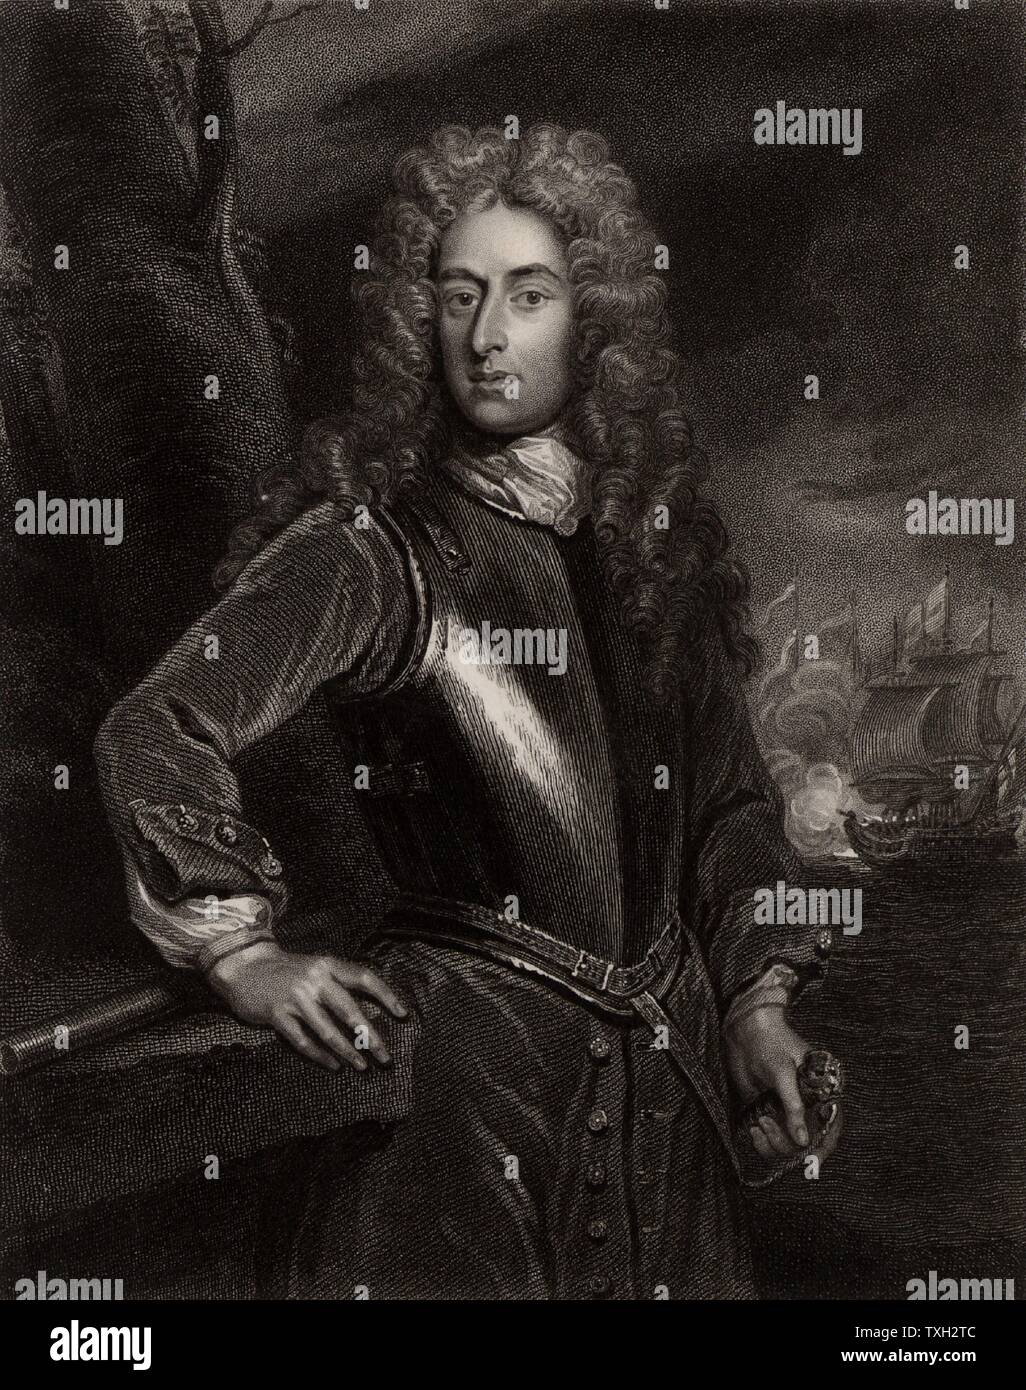 George Byng, lst Viscount Torrington (1663-1733) German naval Commander: Admiral der Flotte 1718. Erster Lord der Admiralität von 1727. Gravur nach Portrait von Godfrey Kneller. Stockfoto